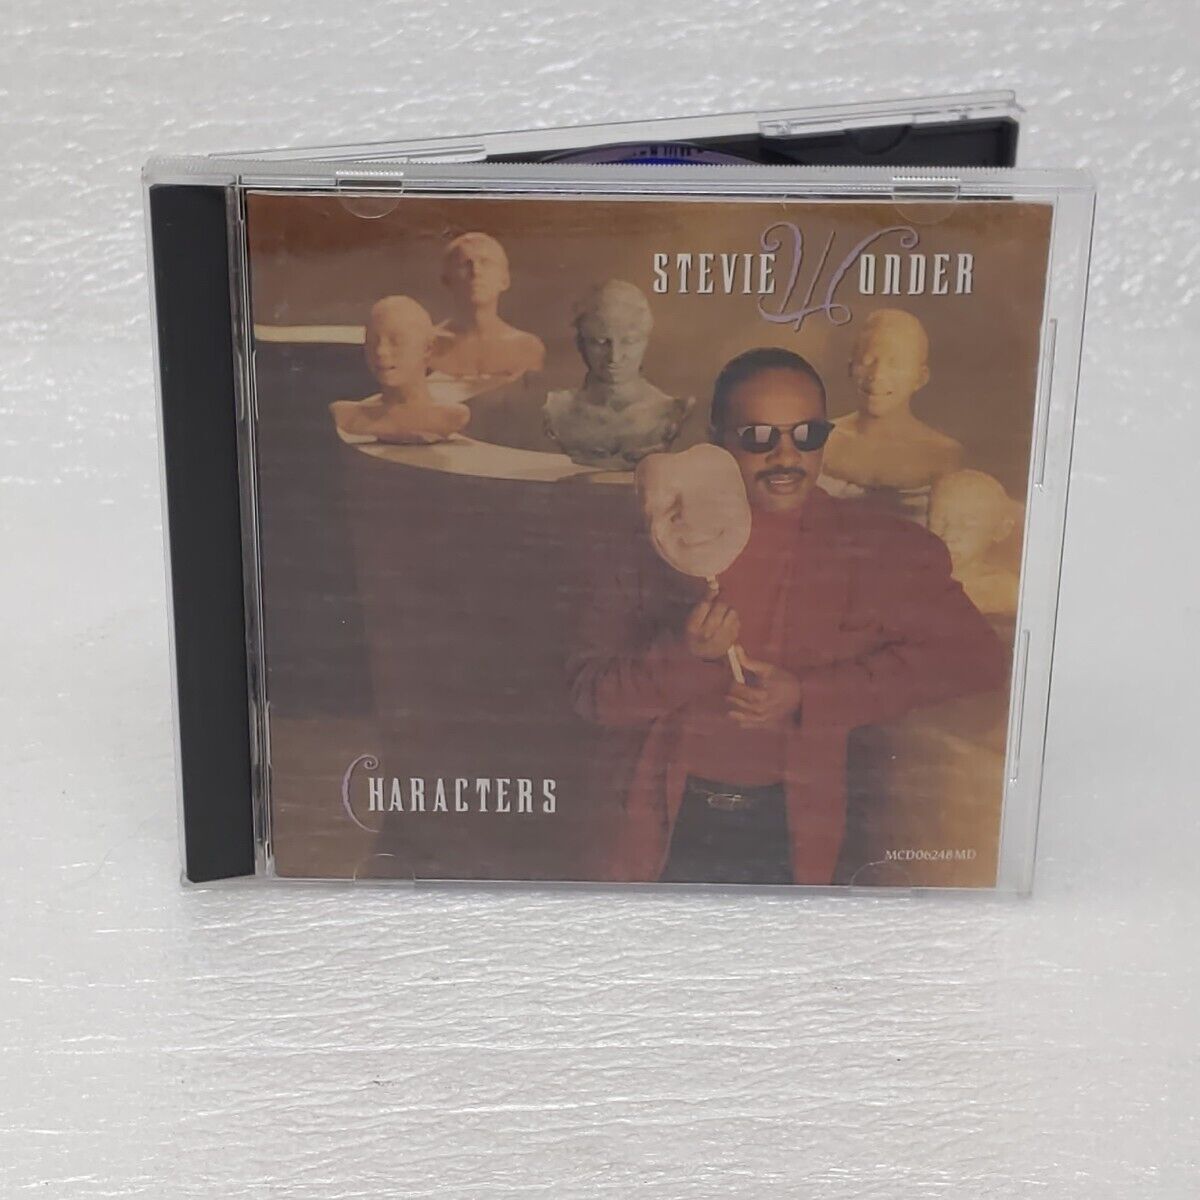 RARE Vintage Stevie Wonder - Characters 1987 Motown CD